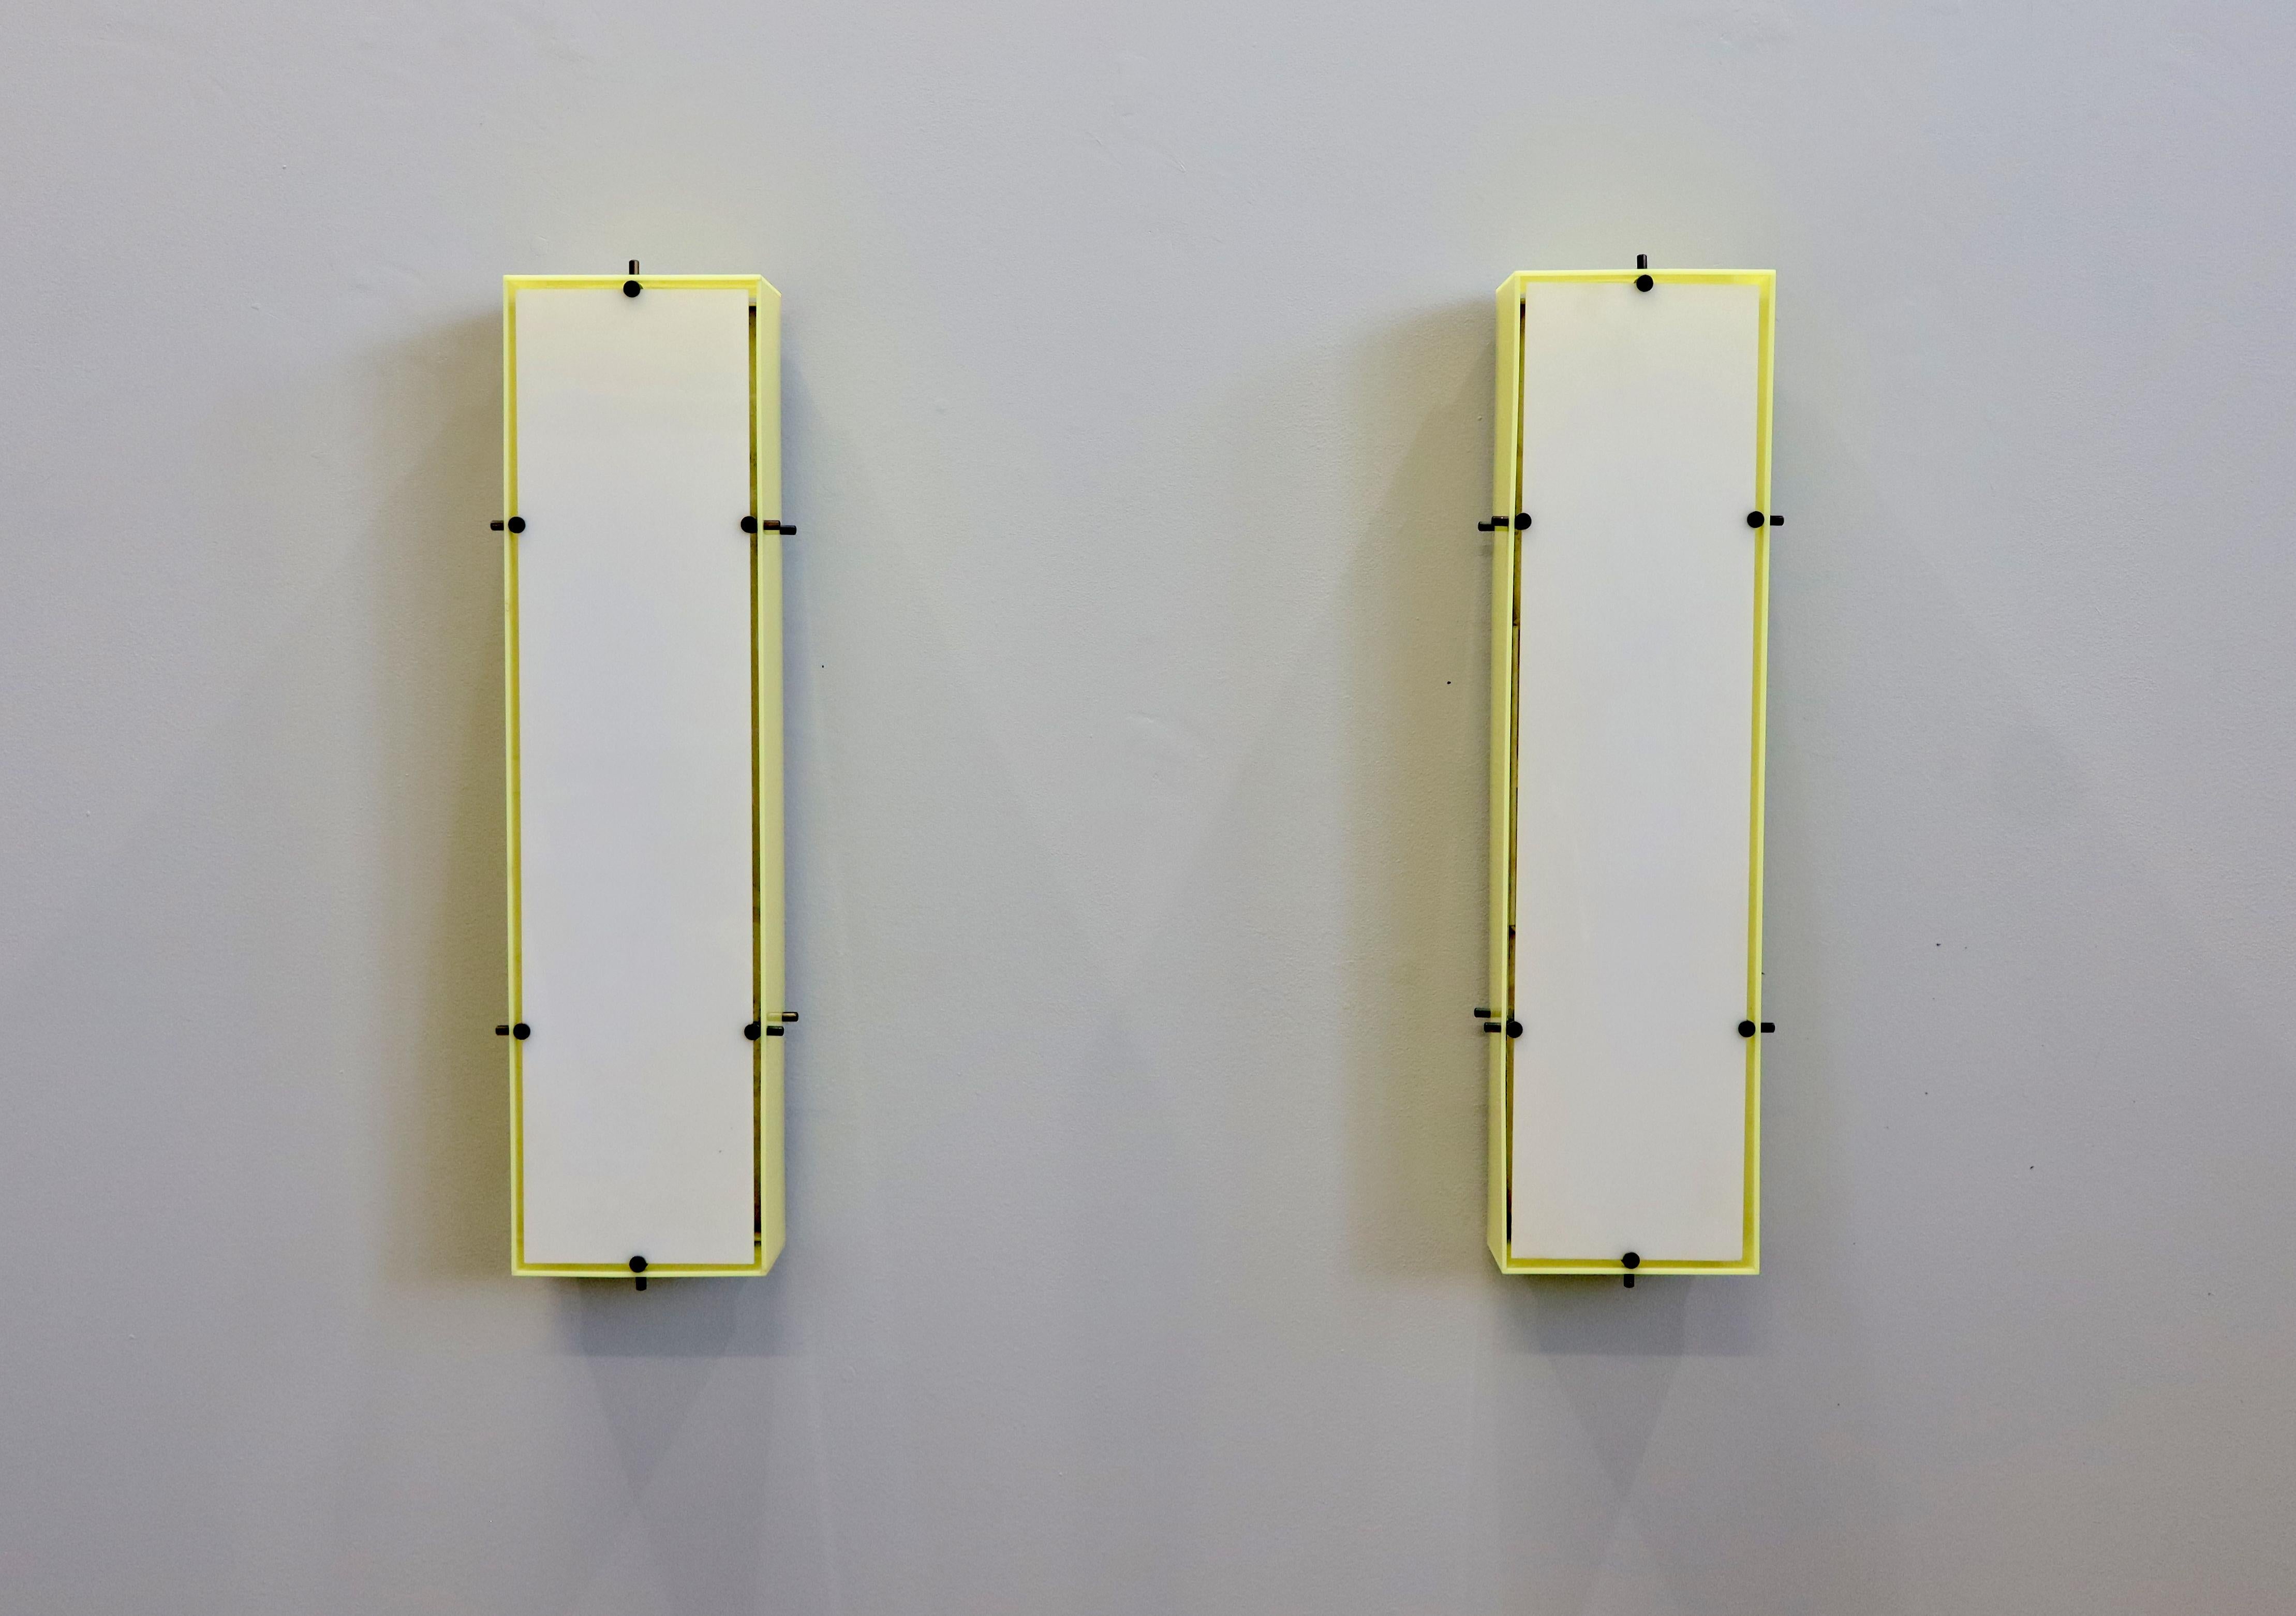 Vier Wandleuchter/Lampen, entworfen von Angelo Lelii für Arredoluce, Italien, 1950er Jahre. Metallrückwand mit gelben Plexiglasseiten und weißer Plexiglasfront. Die Originaletiketten des Herstellers sind vorhanden.